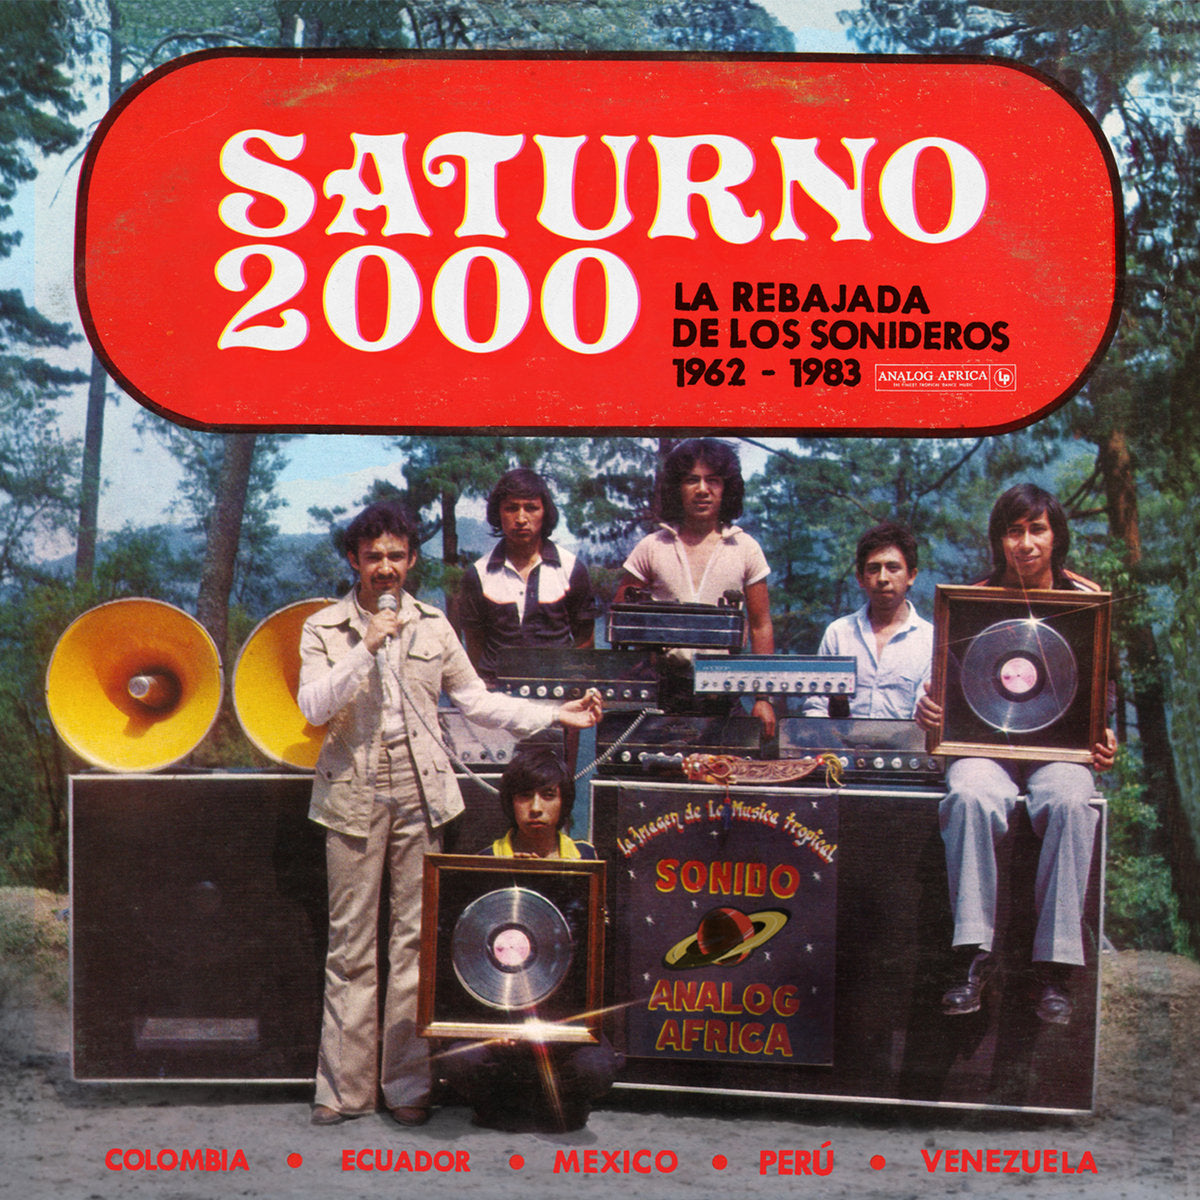 |v/a| "Saturno 2000: La Rebajada de Los Sonideros 1962 - 1983"  2LP